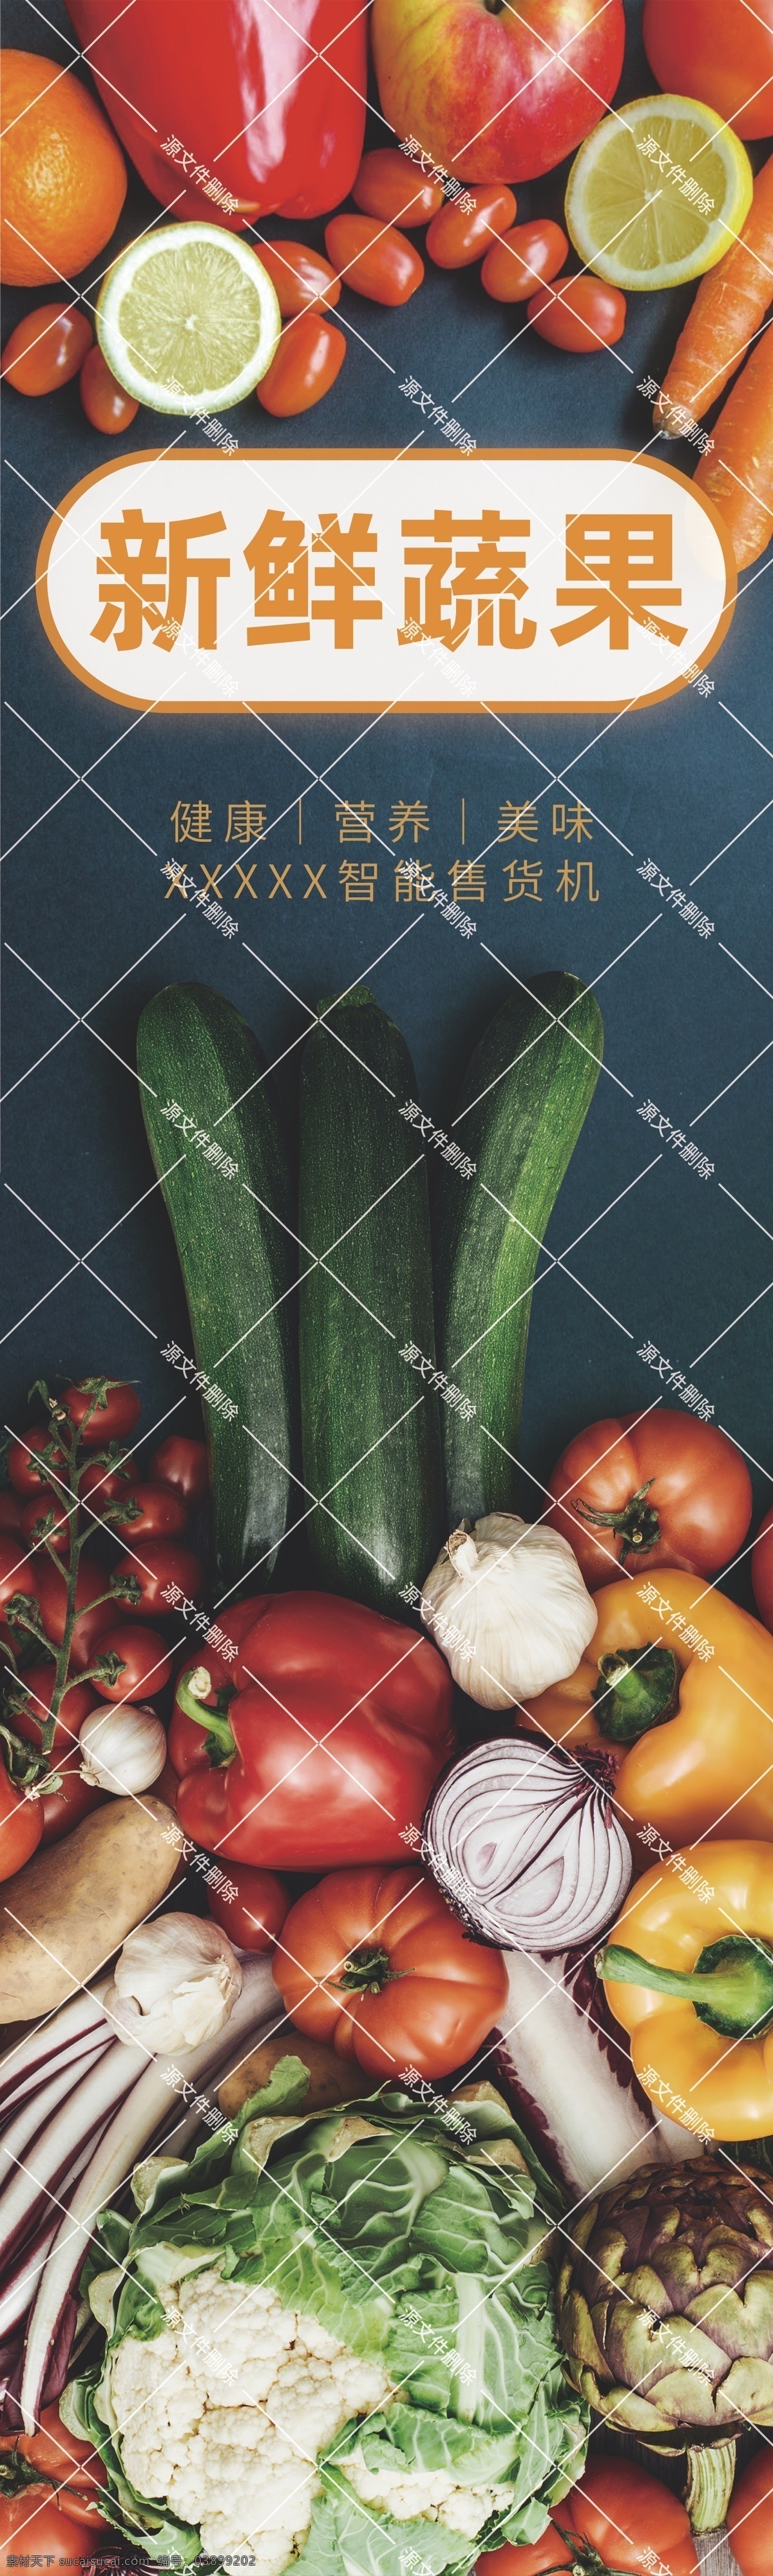 新鲜 蔬果 cm 230 新鲜蔬果 果蔬 贴纸 遮阳棚 遮雨棚 广告贴纸 展板模板